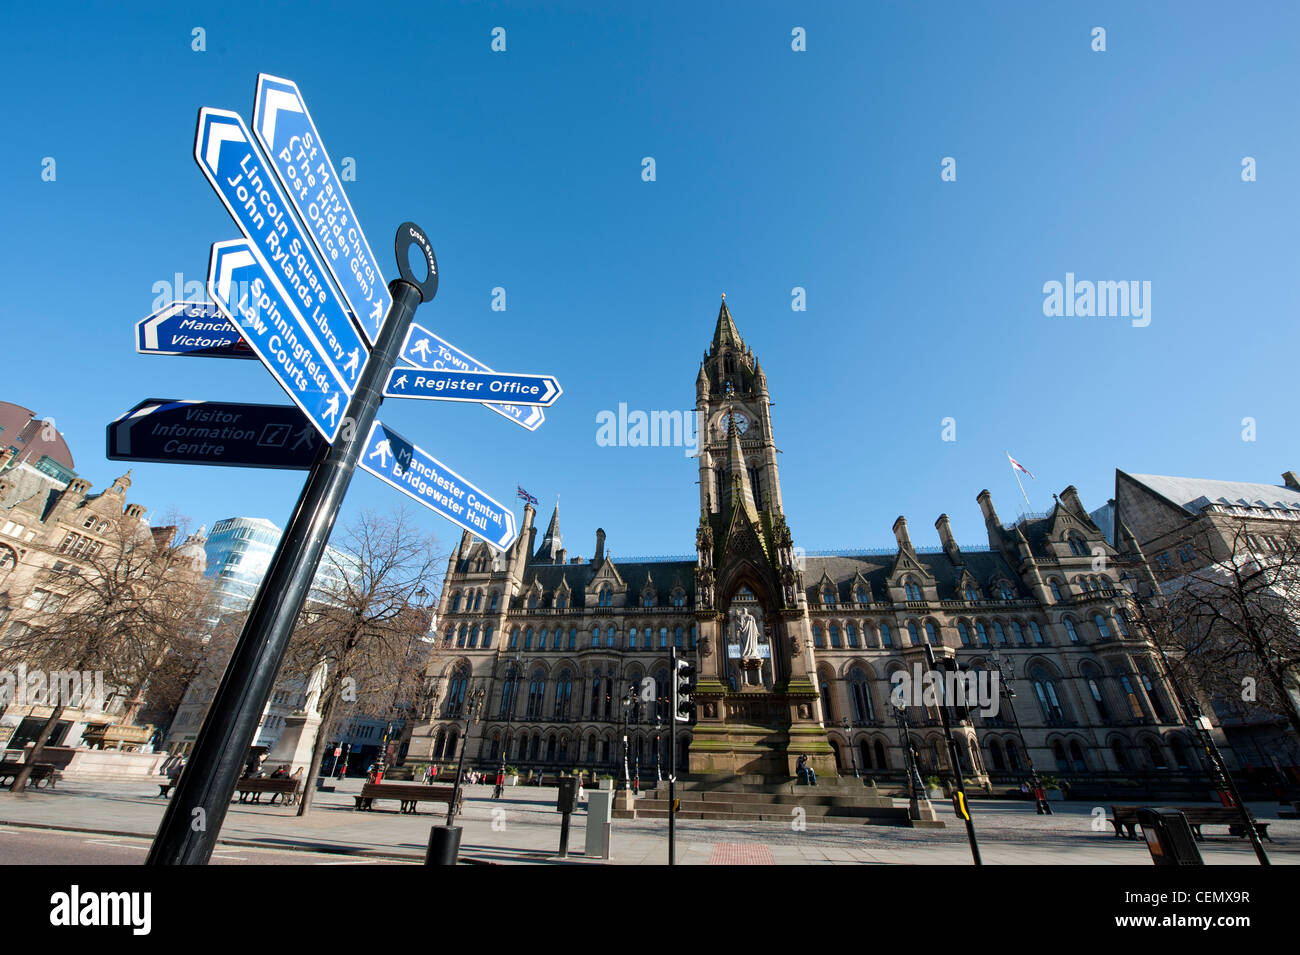 Eine touristische Informationen anmelden Albert Square / Rathaus im Stadtzentrum von Manchester an einem strahlend blauen Himmel-Tag. Stockfoto